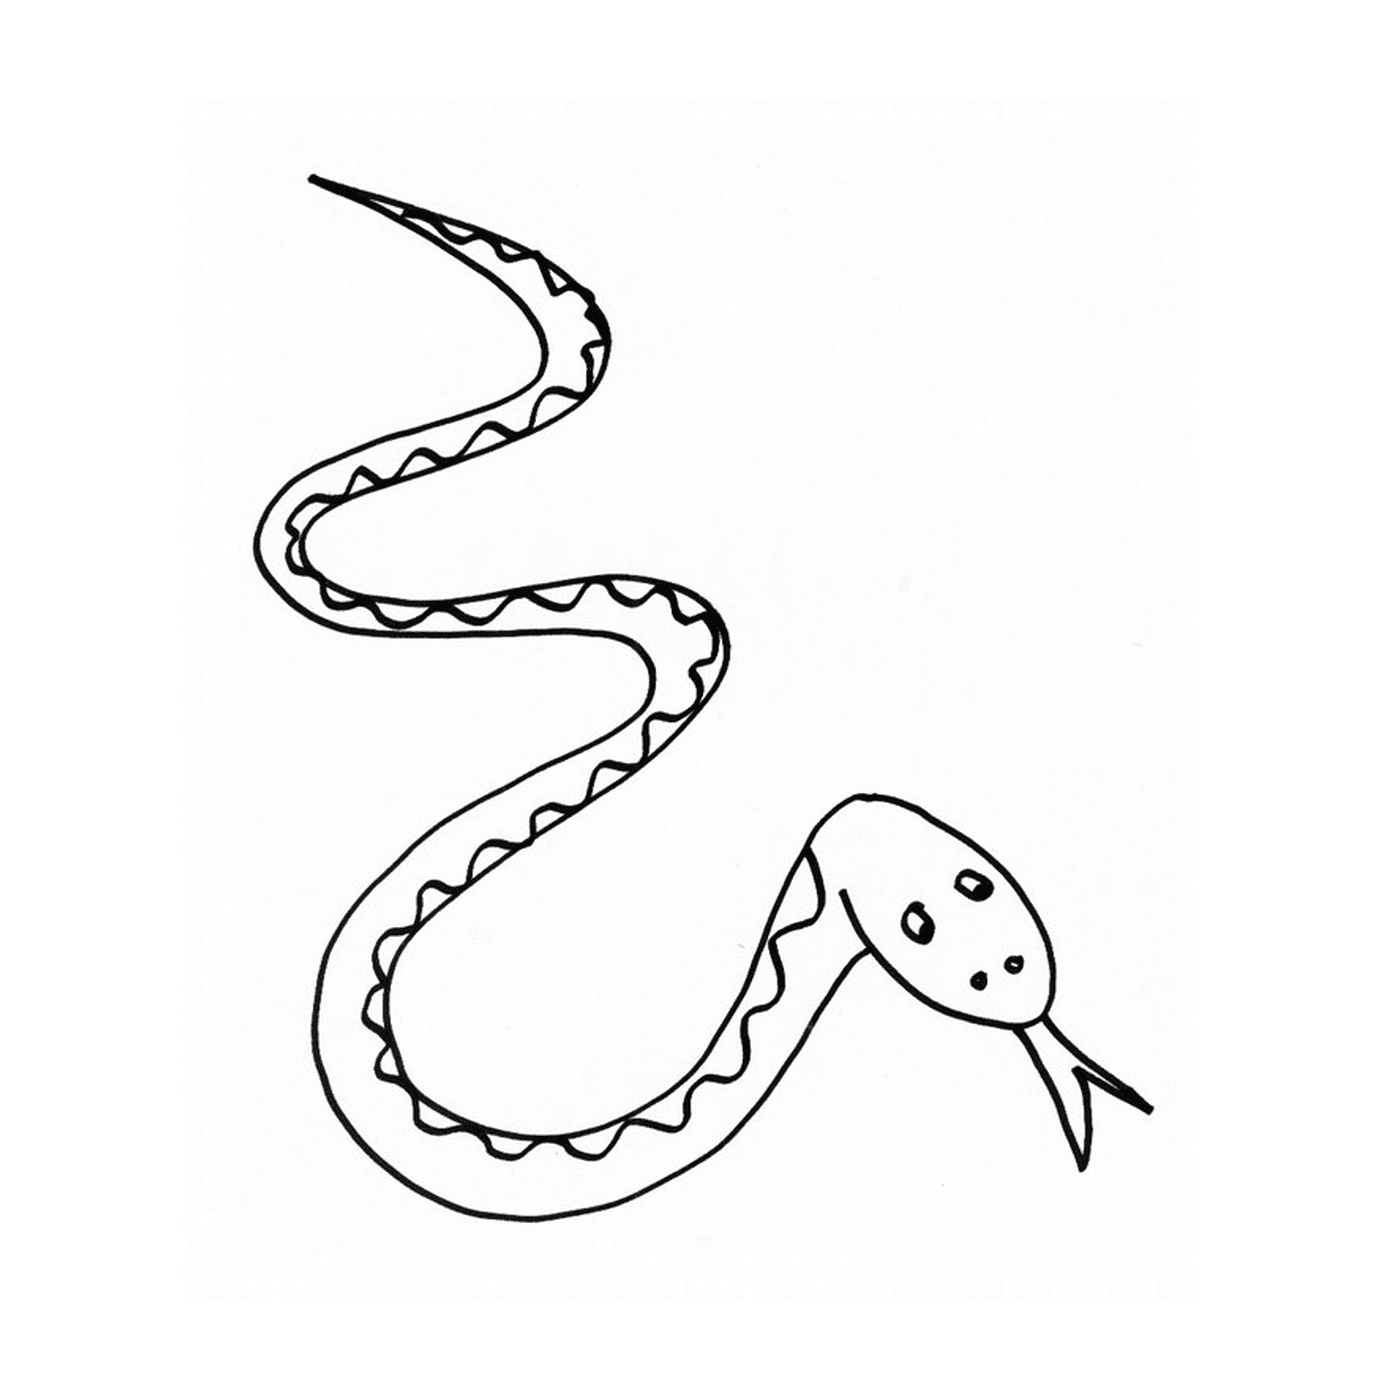  Uma cobra desenhada 